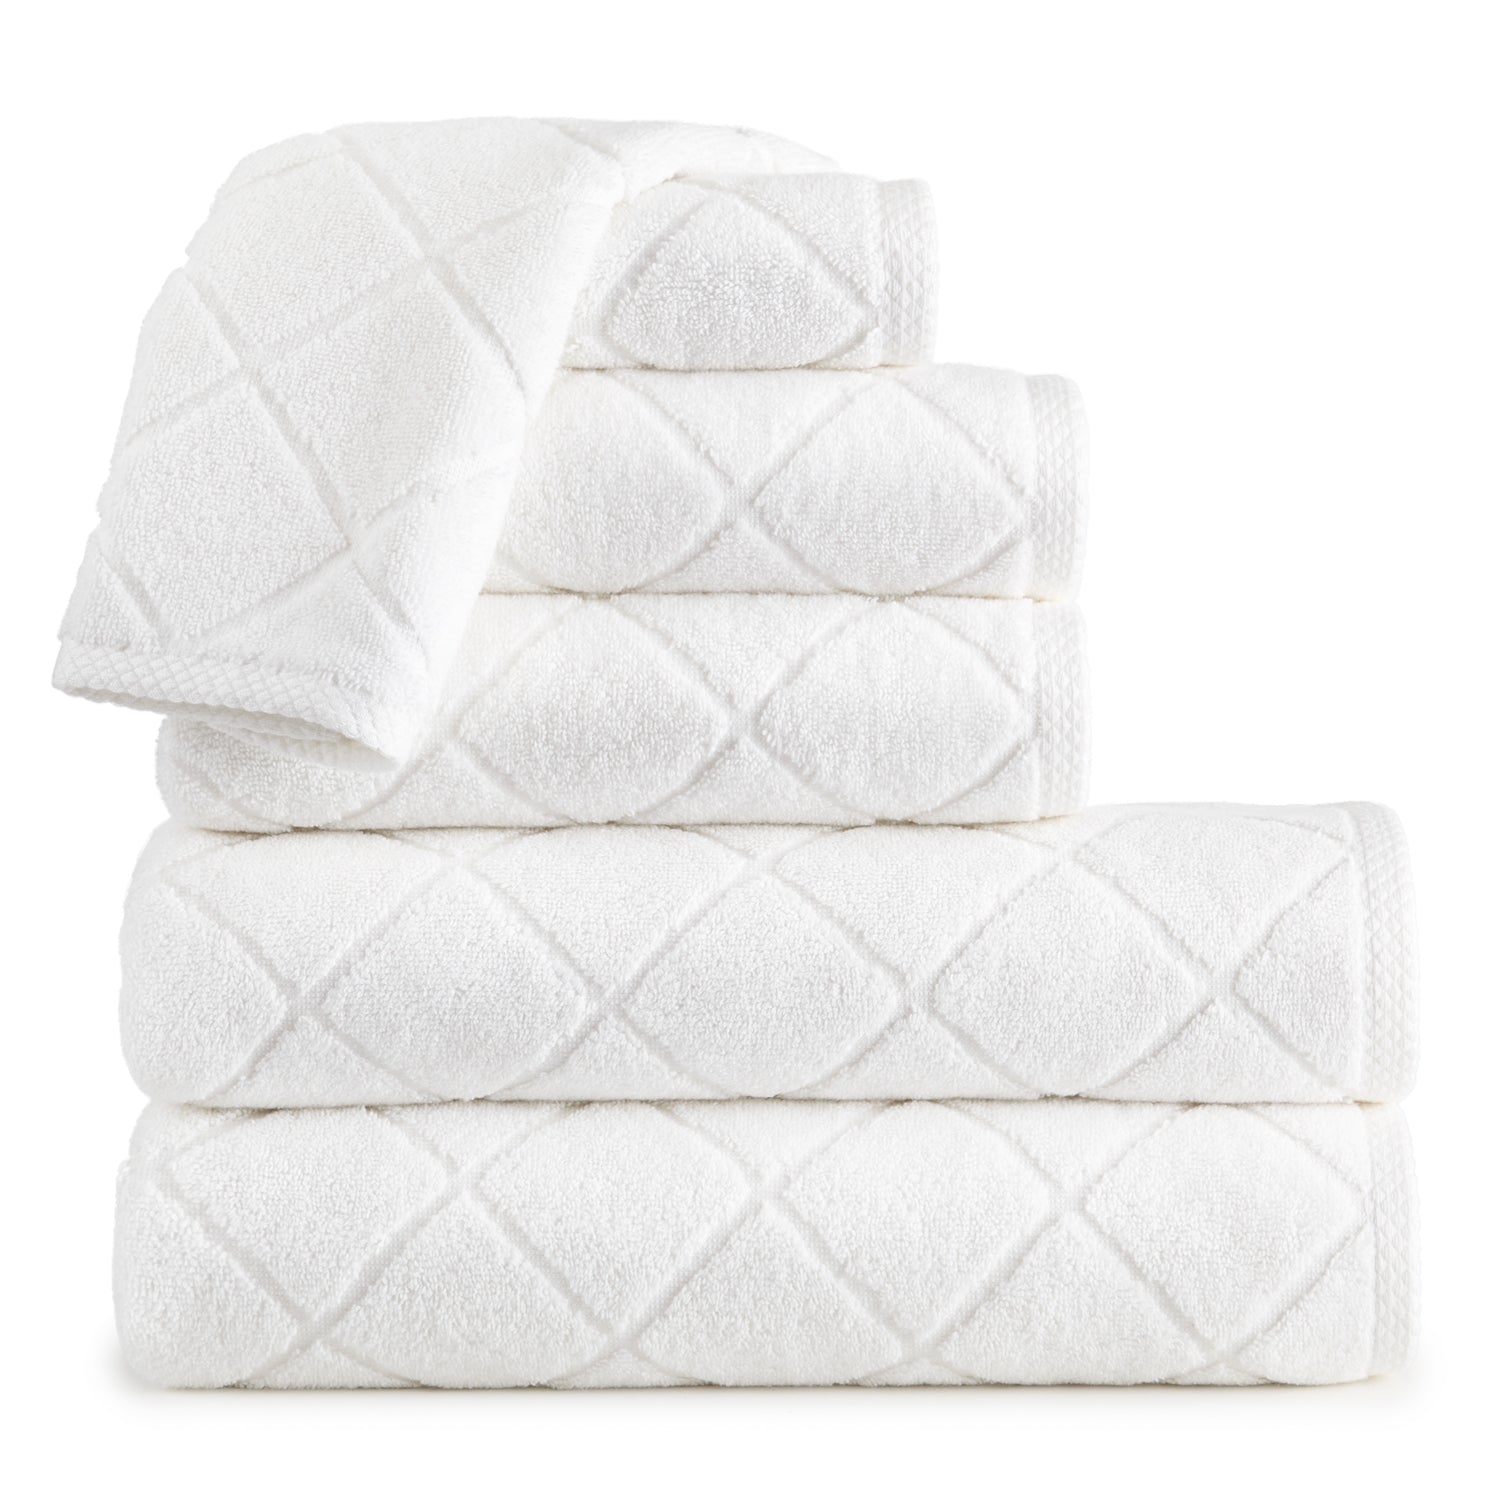 https://www.paynesgray.com/cdn/shop/products/Nantucket-Towels_White_v2_2400x.jpg?v=1571931974